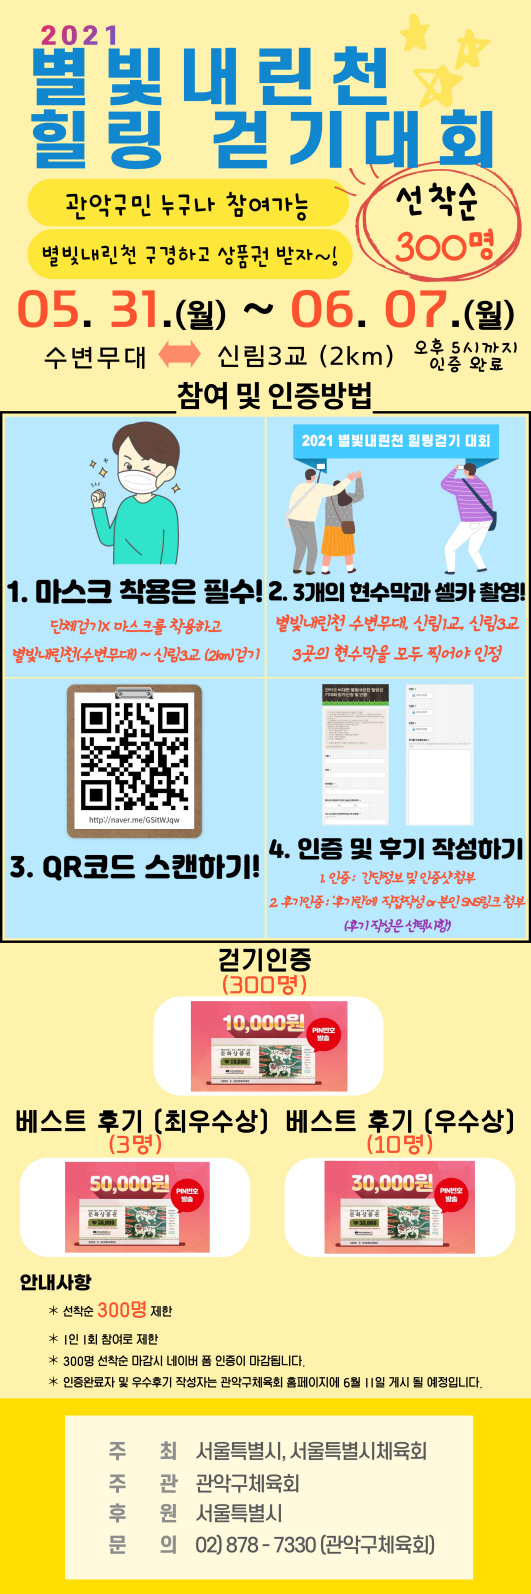 사본 -2021 별빛내린천 힐링 걷기 대회 팝업창(수정).jpg